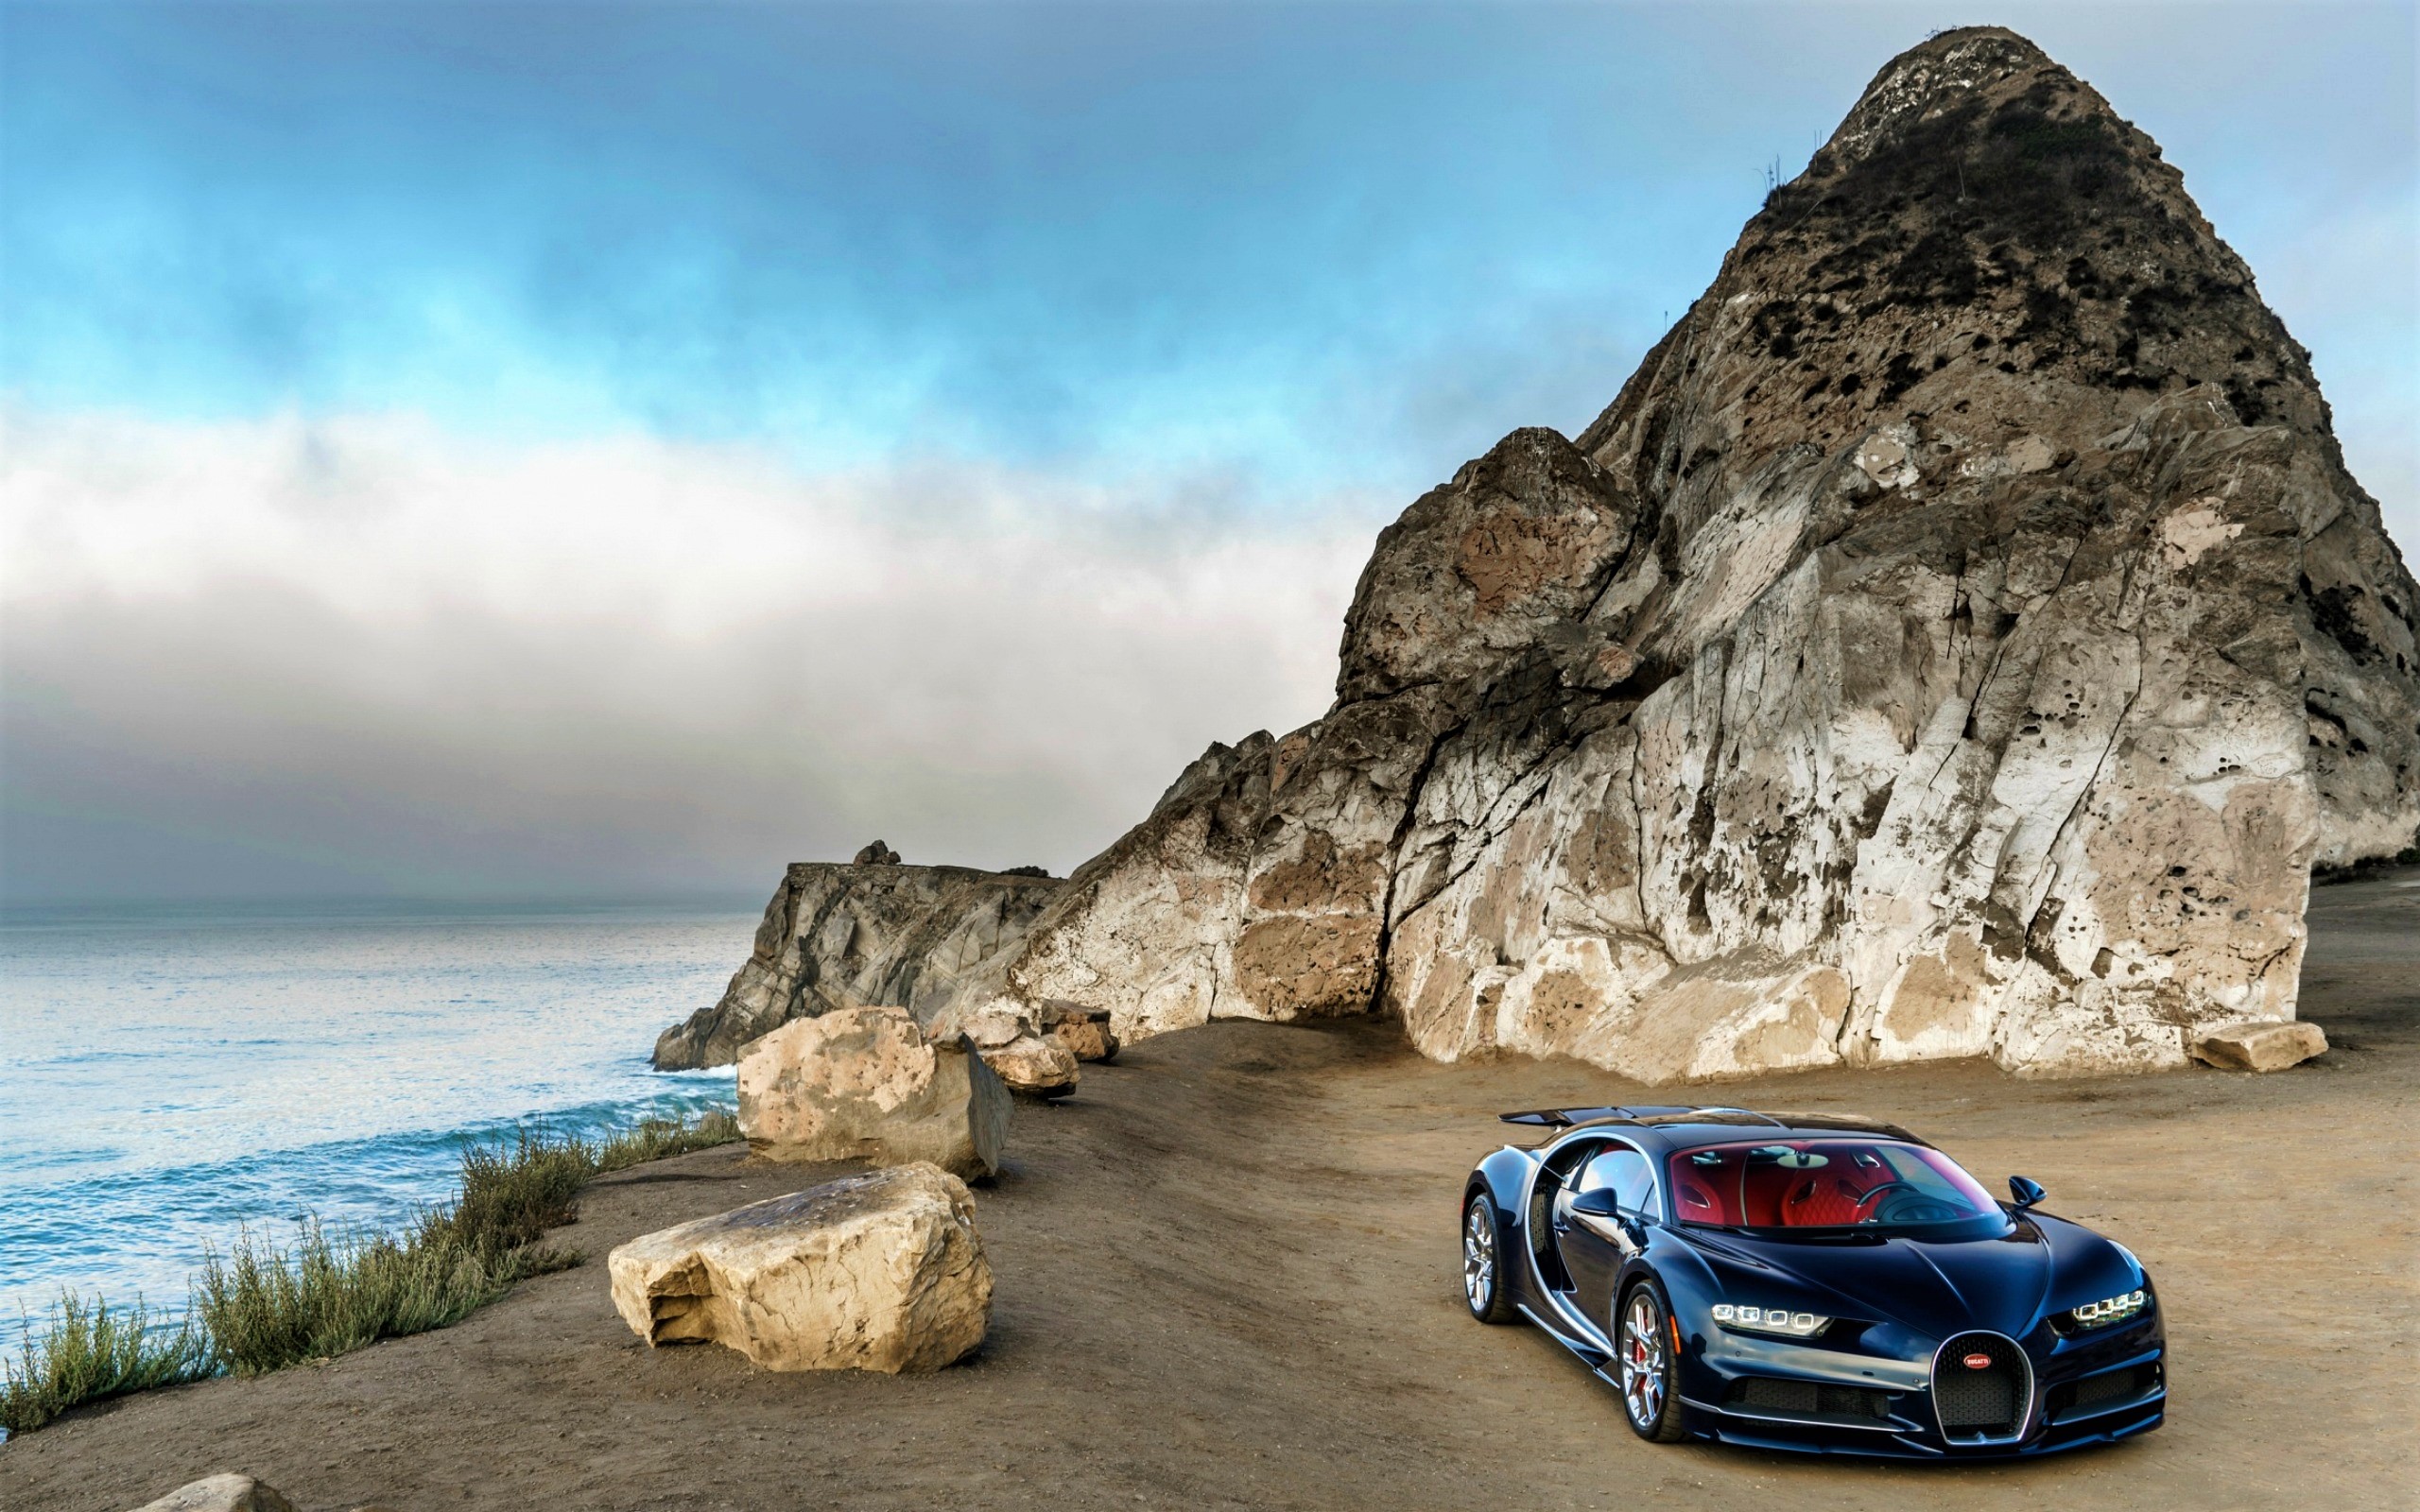 Download mobile wallpaper Sea, Bugatti, Coast, Car, Ocean, Vehicle, Bugatti Chiron, Vehicles for free.